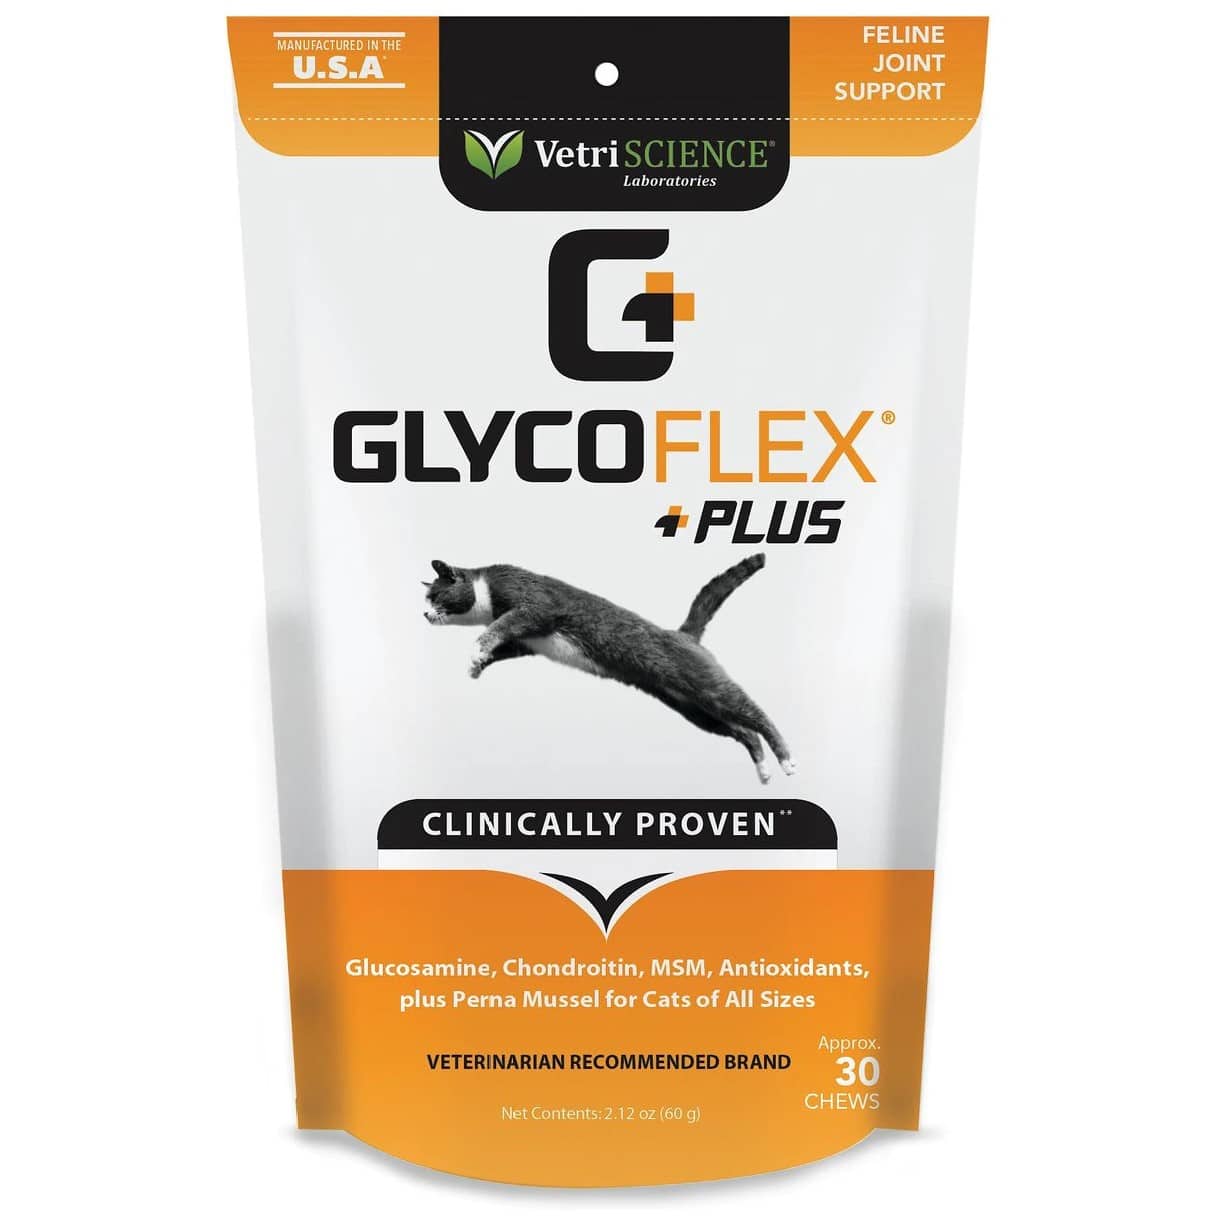 VetriScience GlycoFlex Plus Soft Chews Joint Supplement for Cats